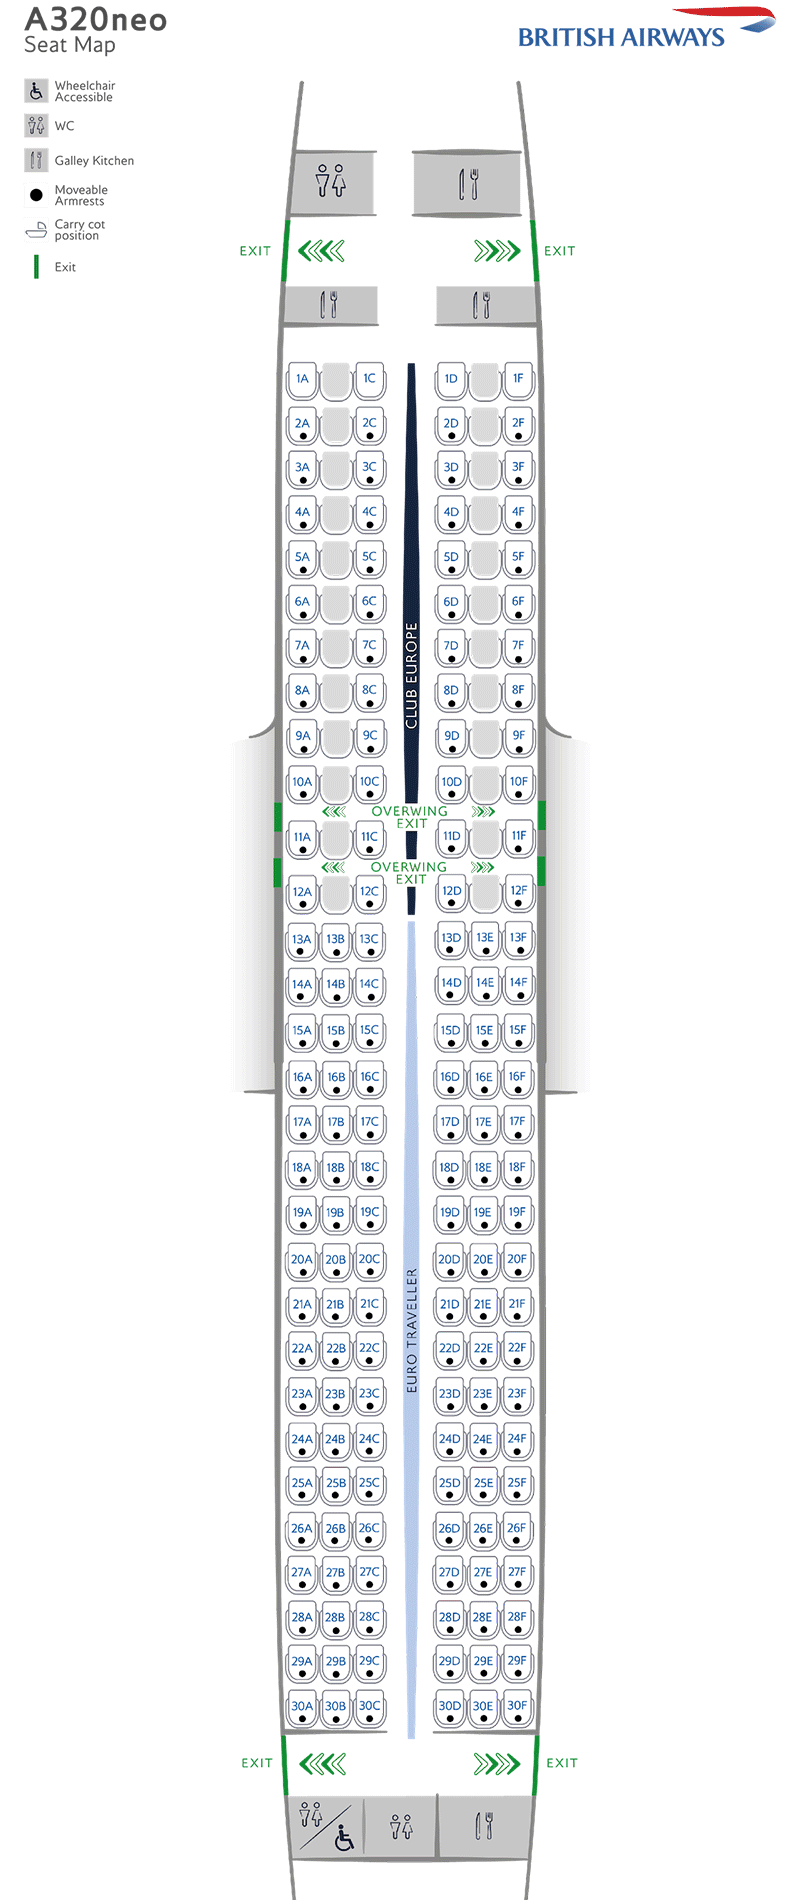 Схема расположения сидений в A320neo